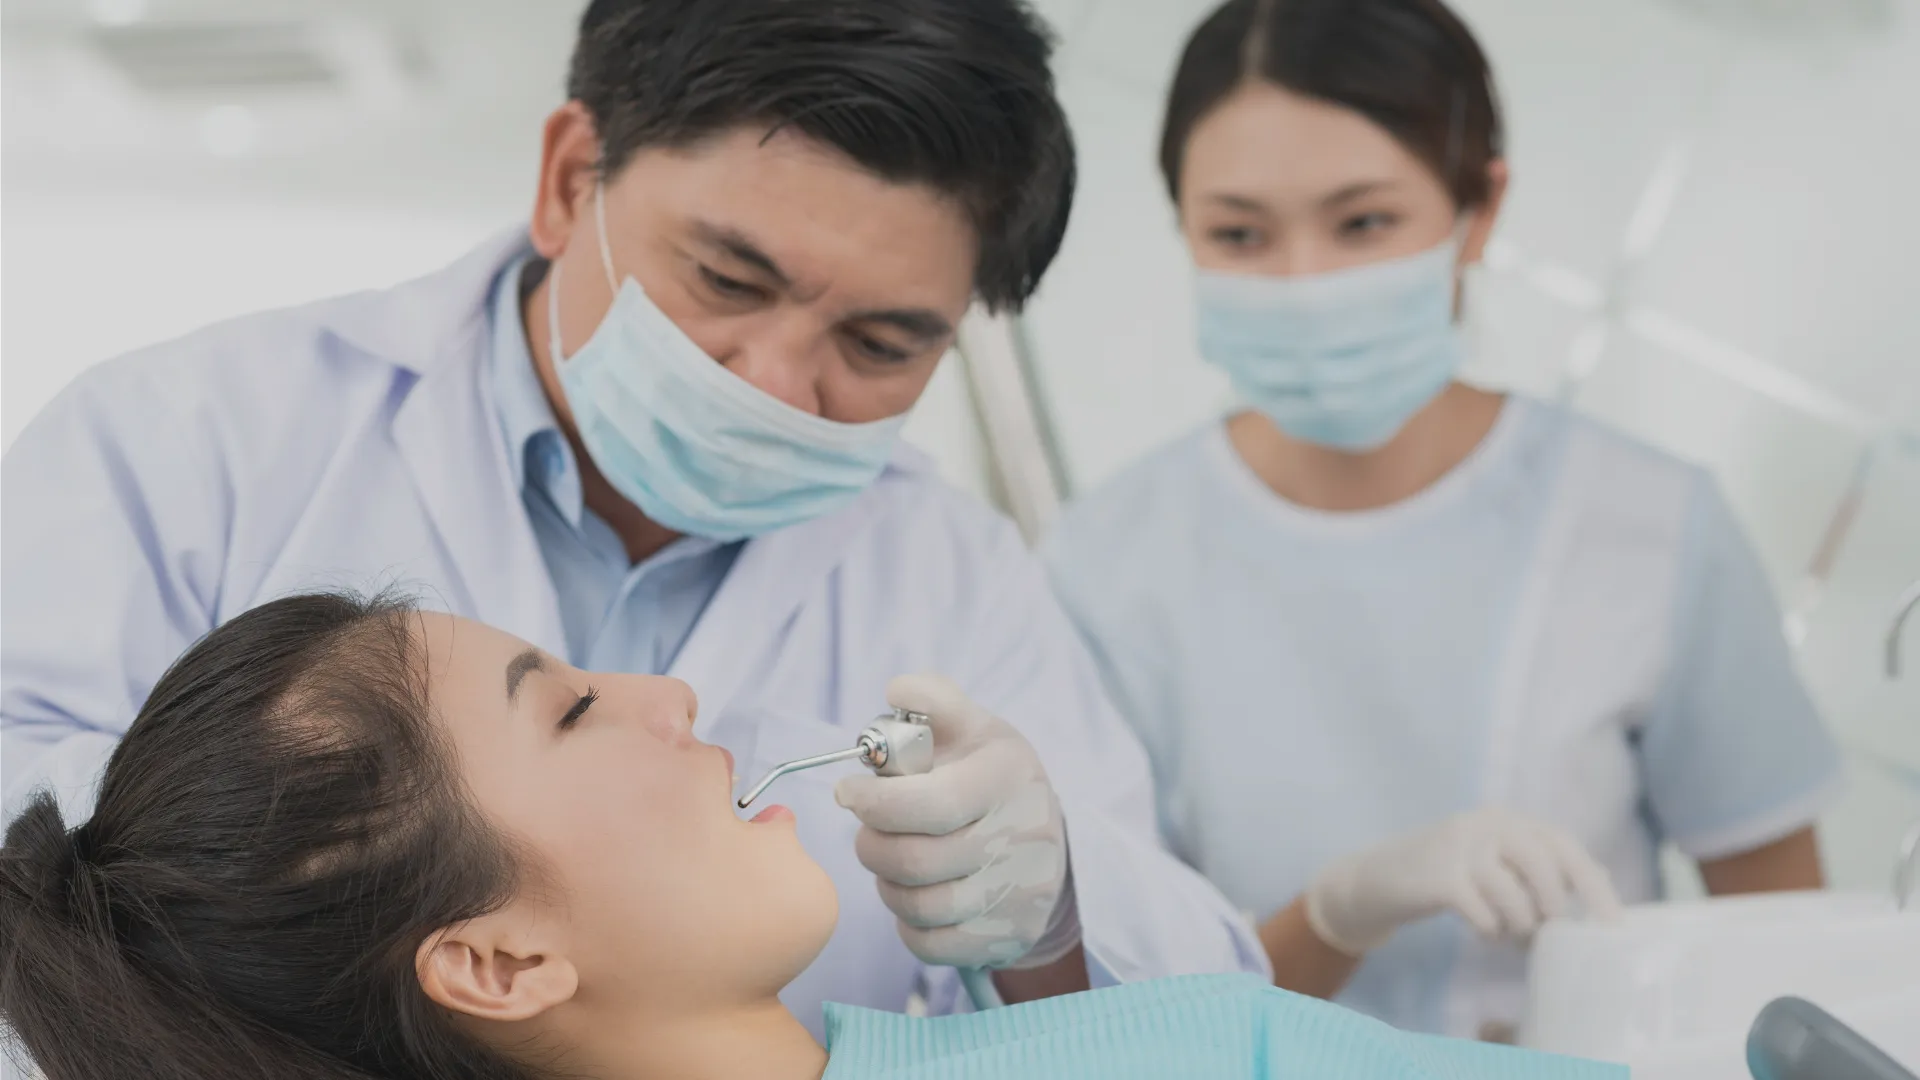 Common General Dental Procedures